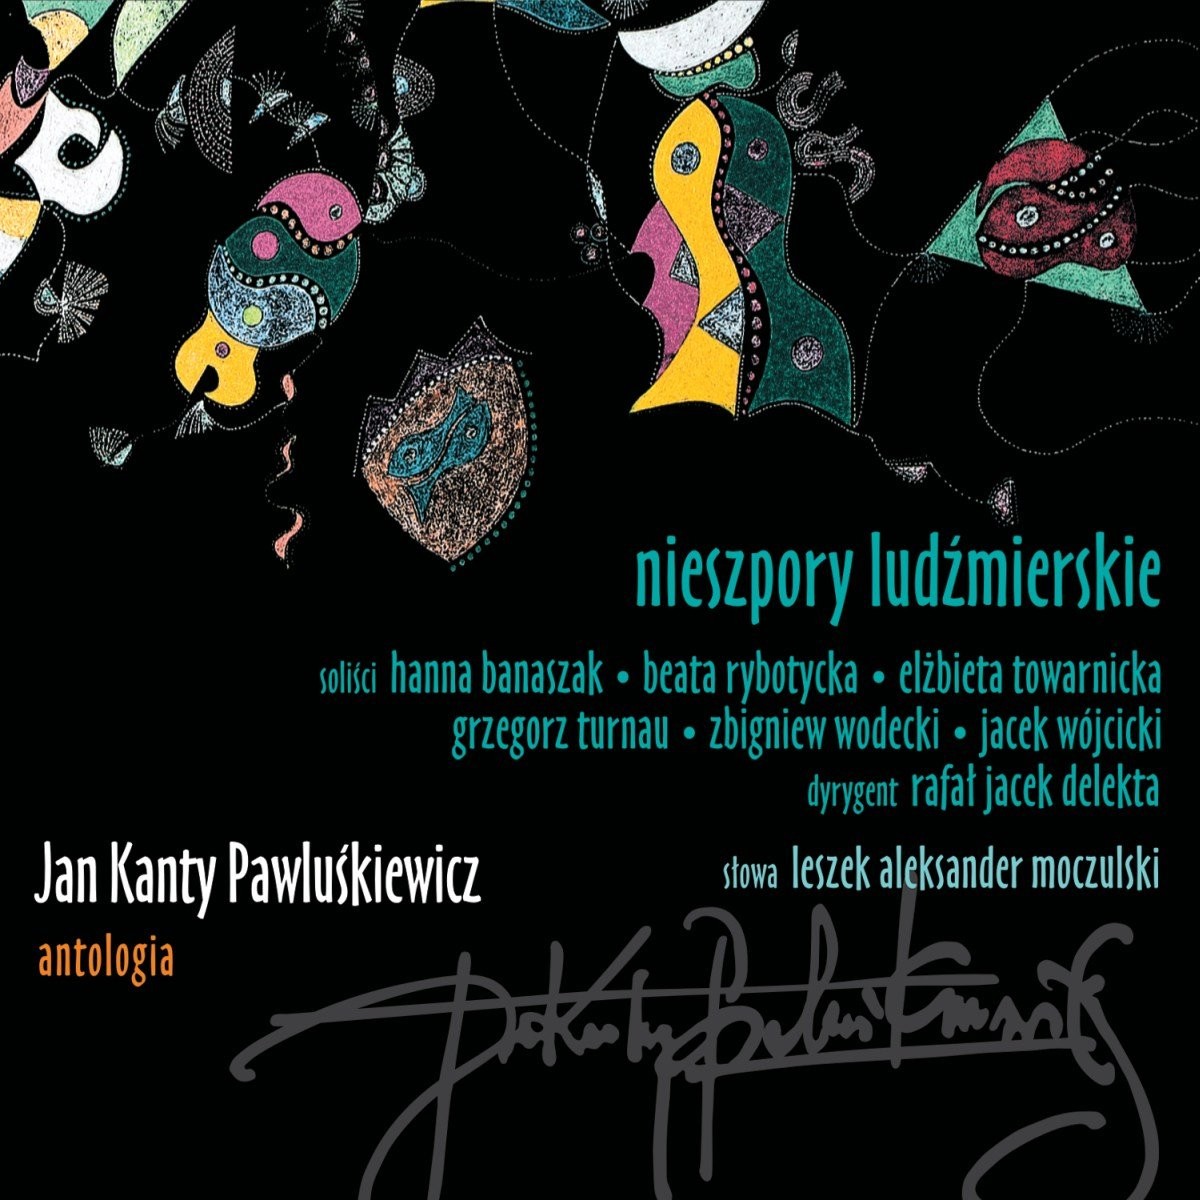 Jan Kanty Pawluśkiewicz Jan Kanty Pawluśkiewicz Antologia Vol 10: Nieszpory ludźmierskie